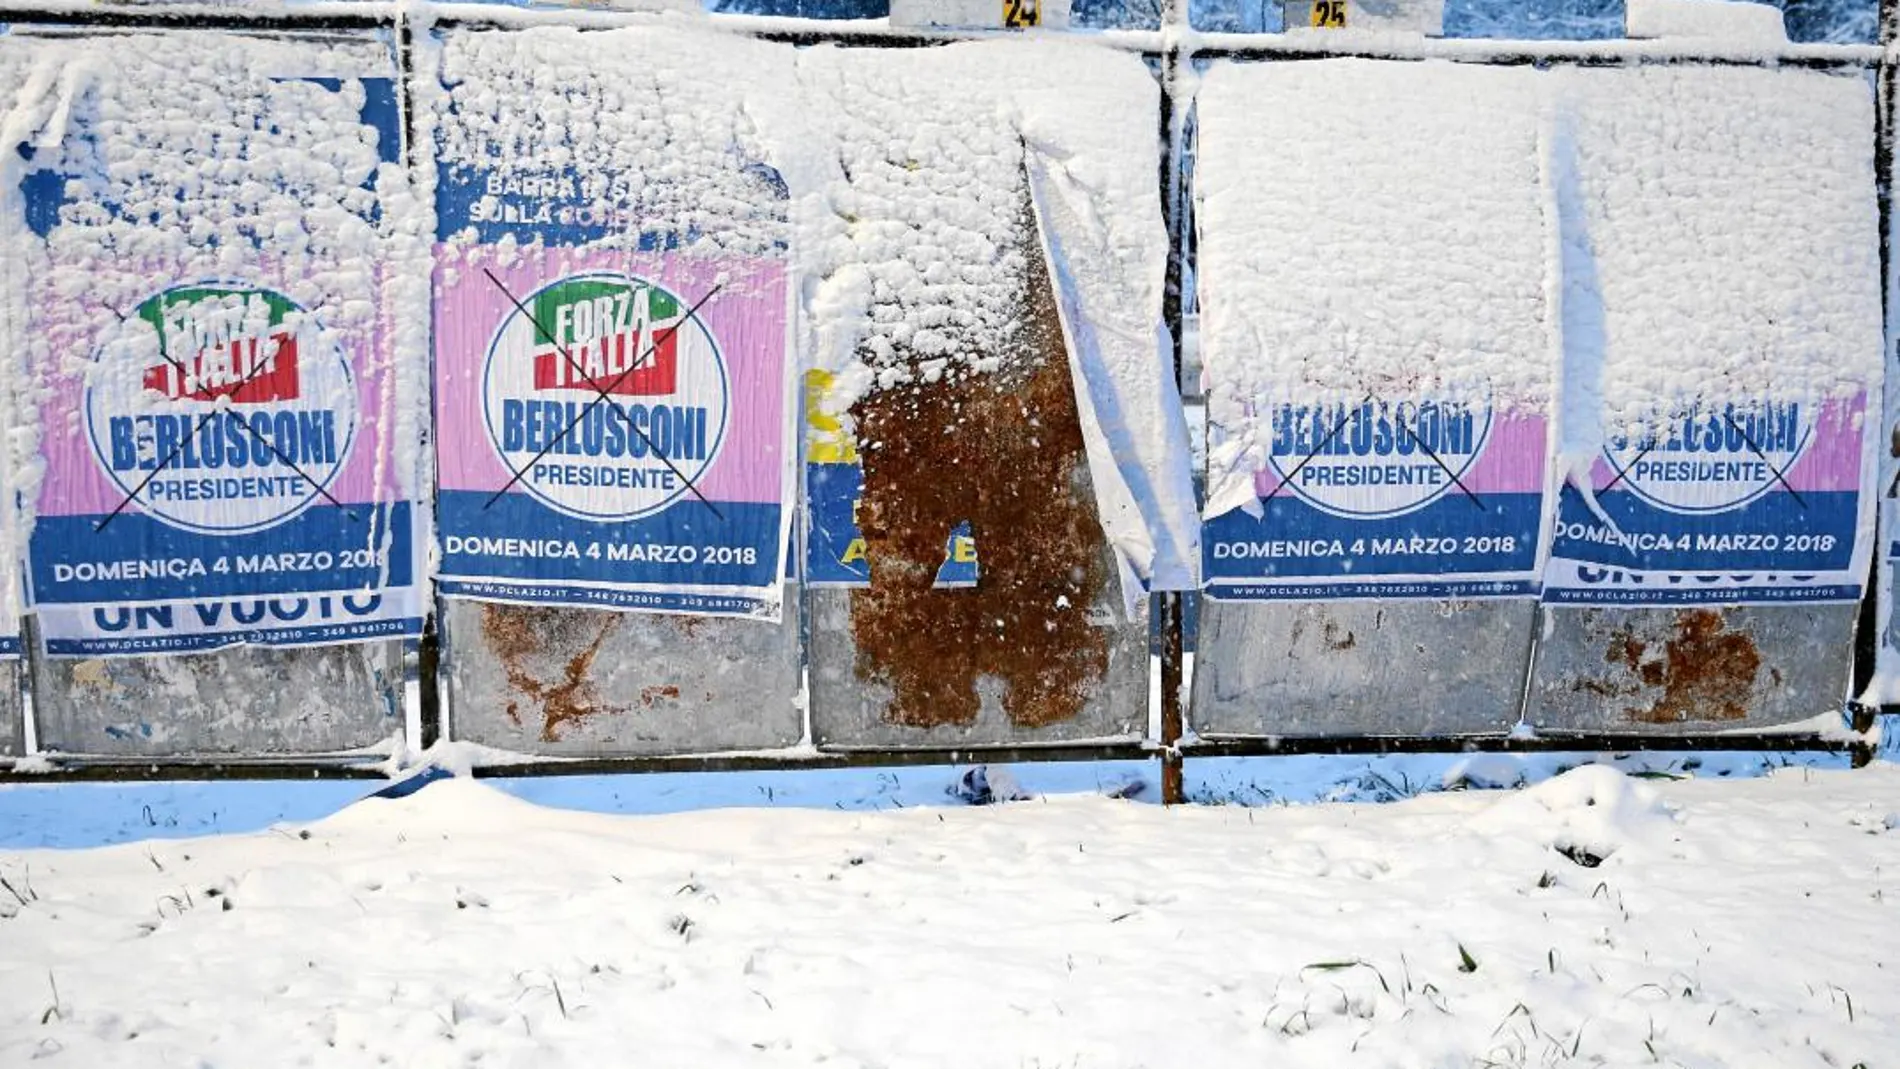 La intensa nieve caída estos días en Roma oculta carteles electorales en el centro de la capital italiana